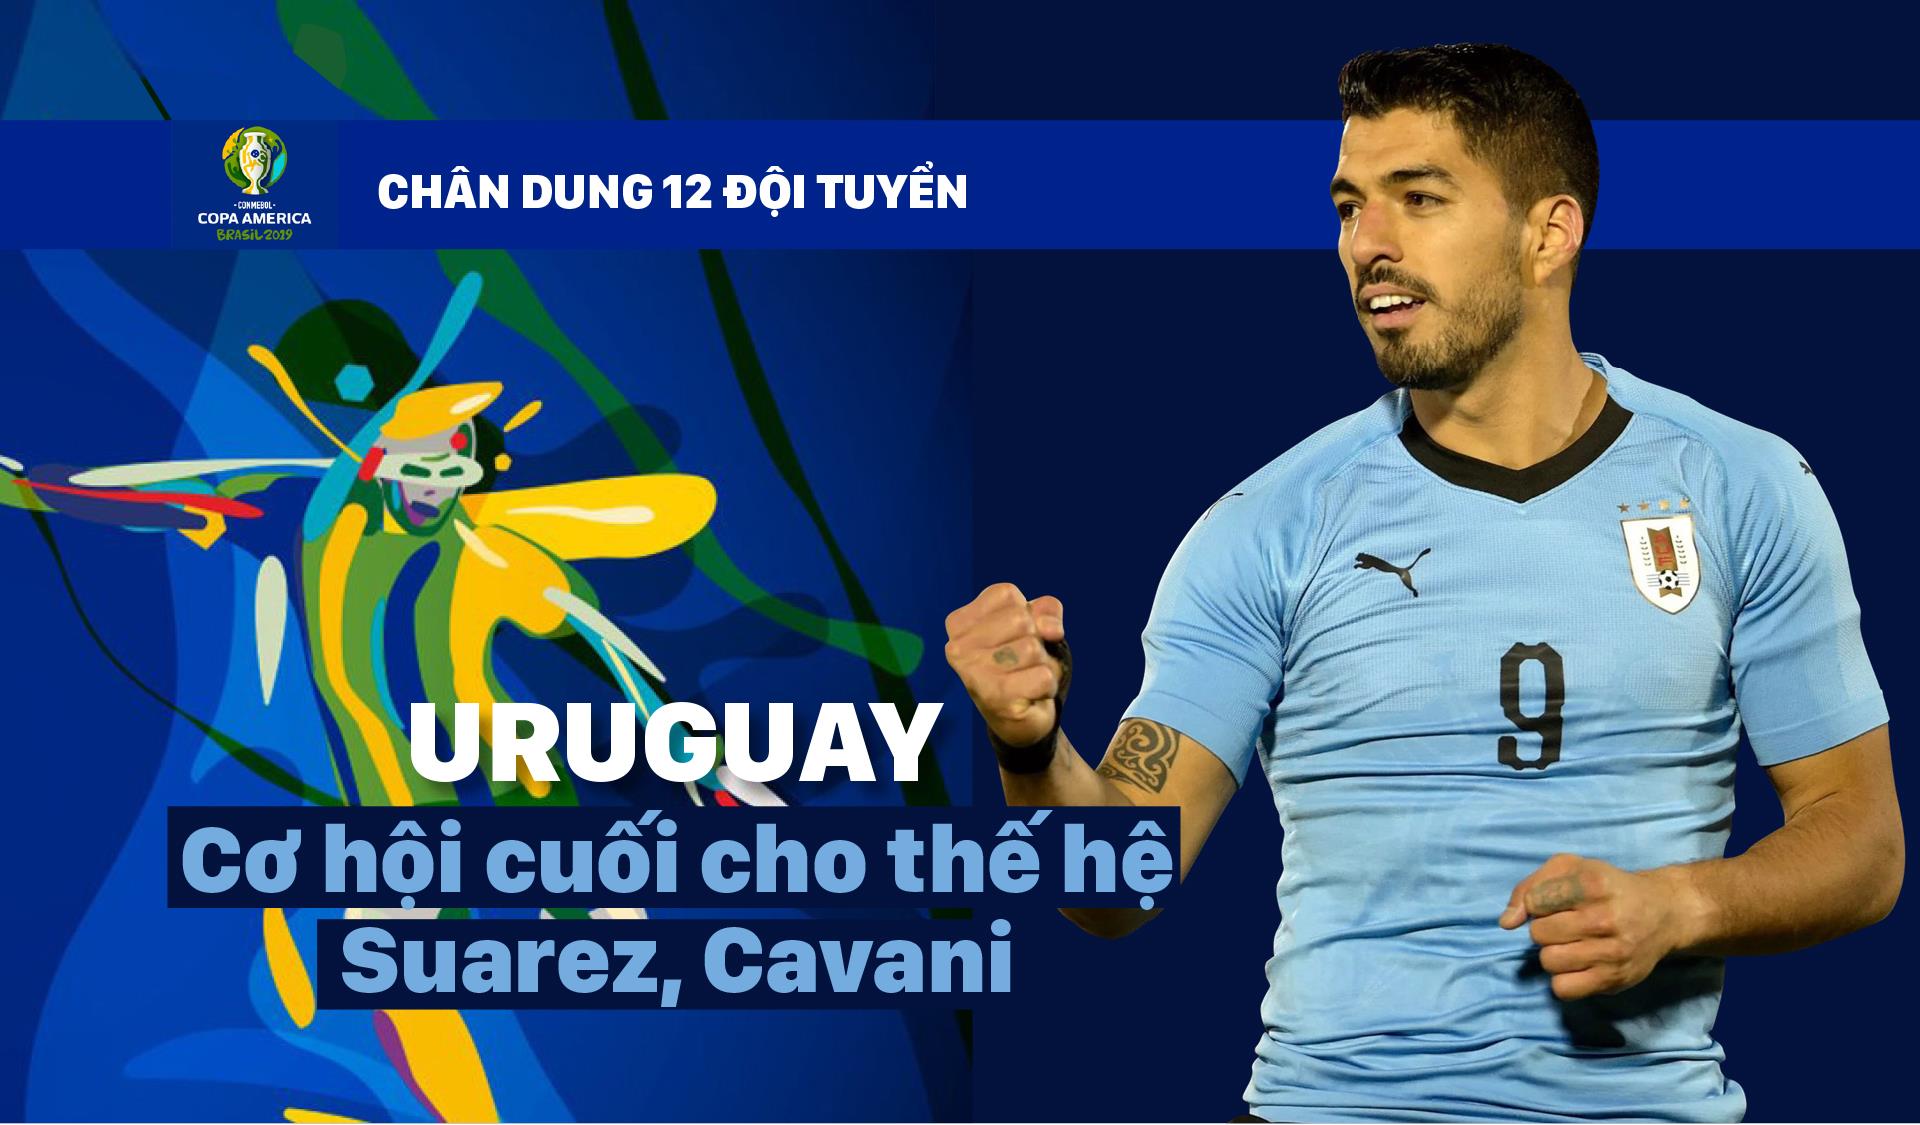 Bảng C: URUGUAY Cơ hội cuối cho thế hệ Suarez, Cavani